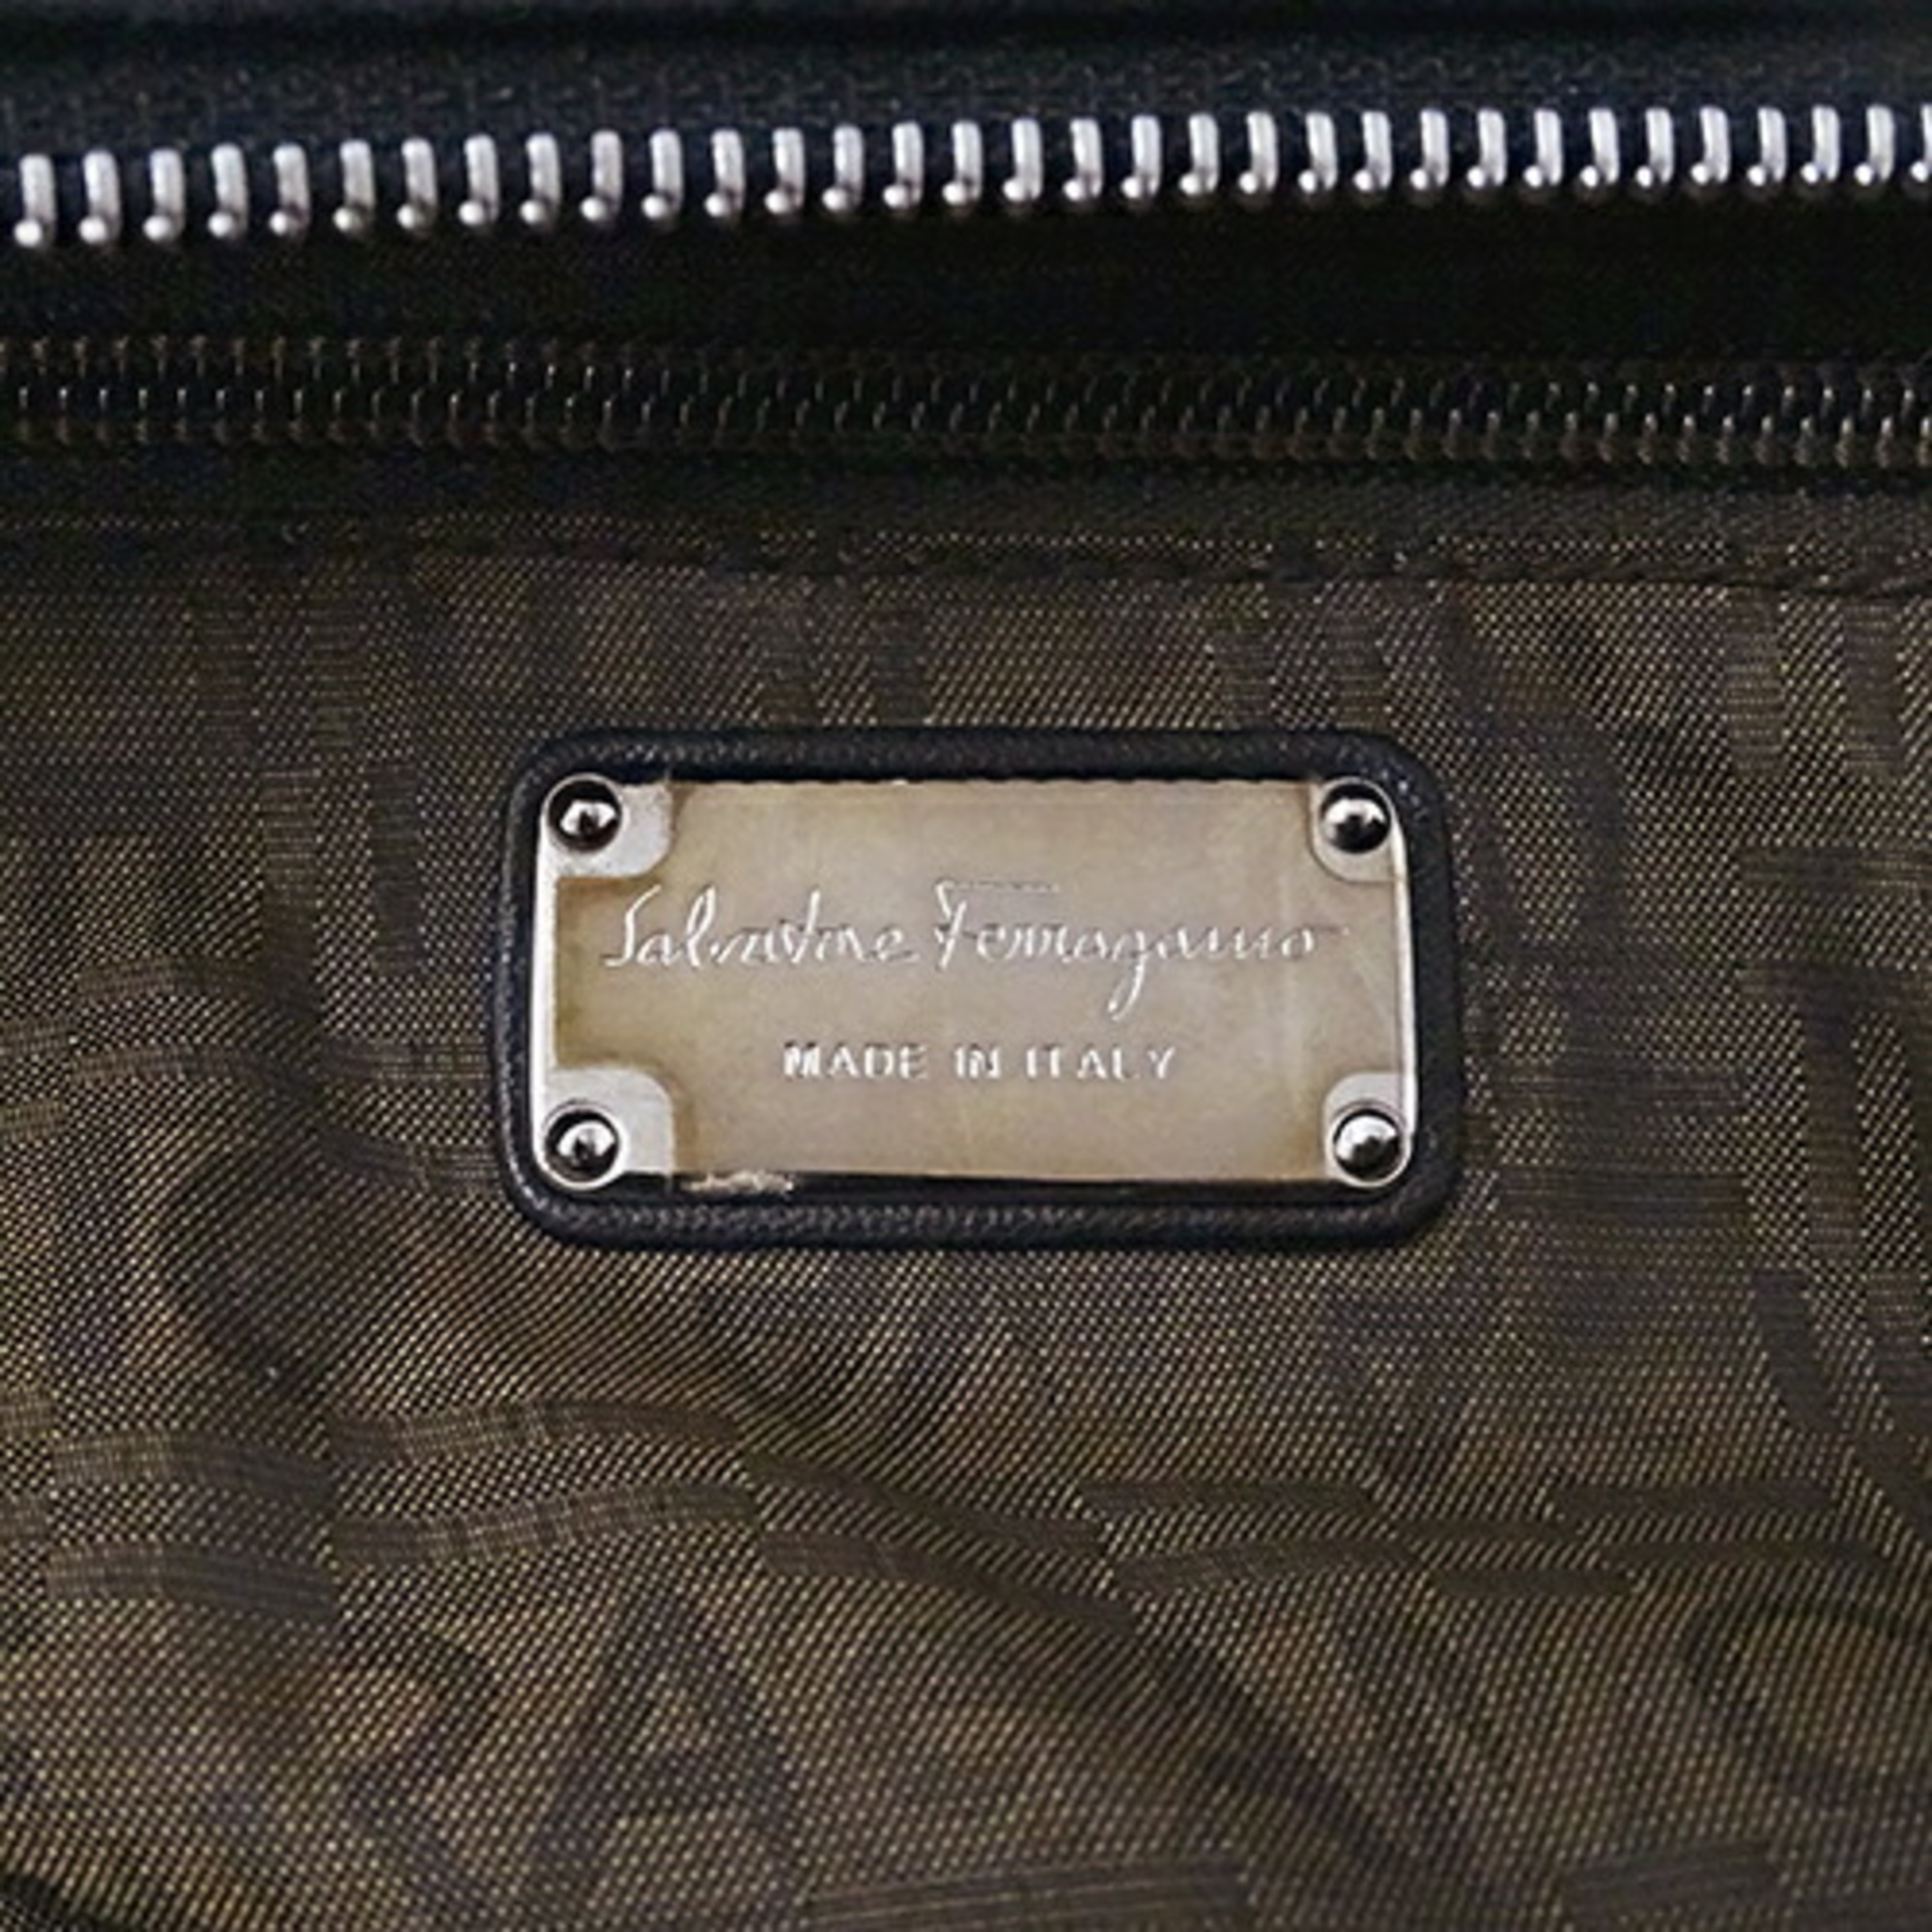 Salvatore Ferragamo Bag Ladies Tote Shoulder Leather Black